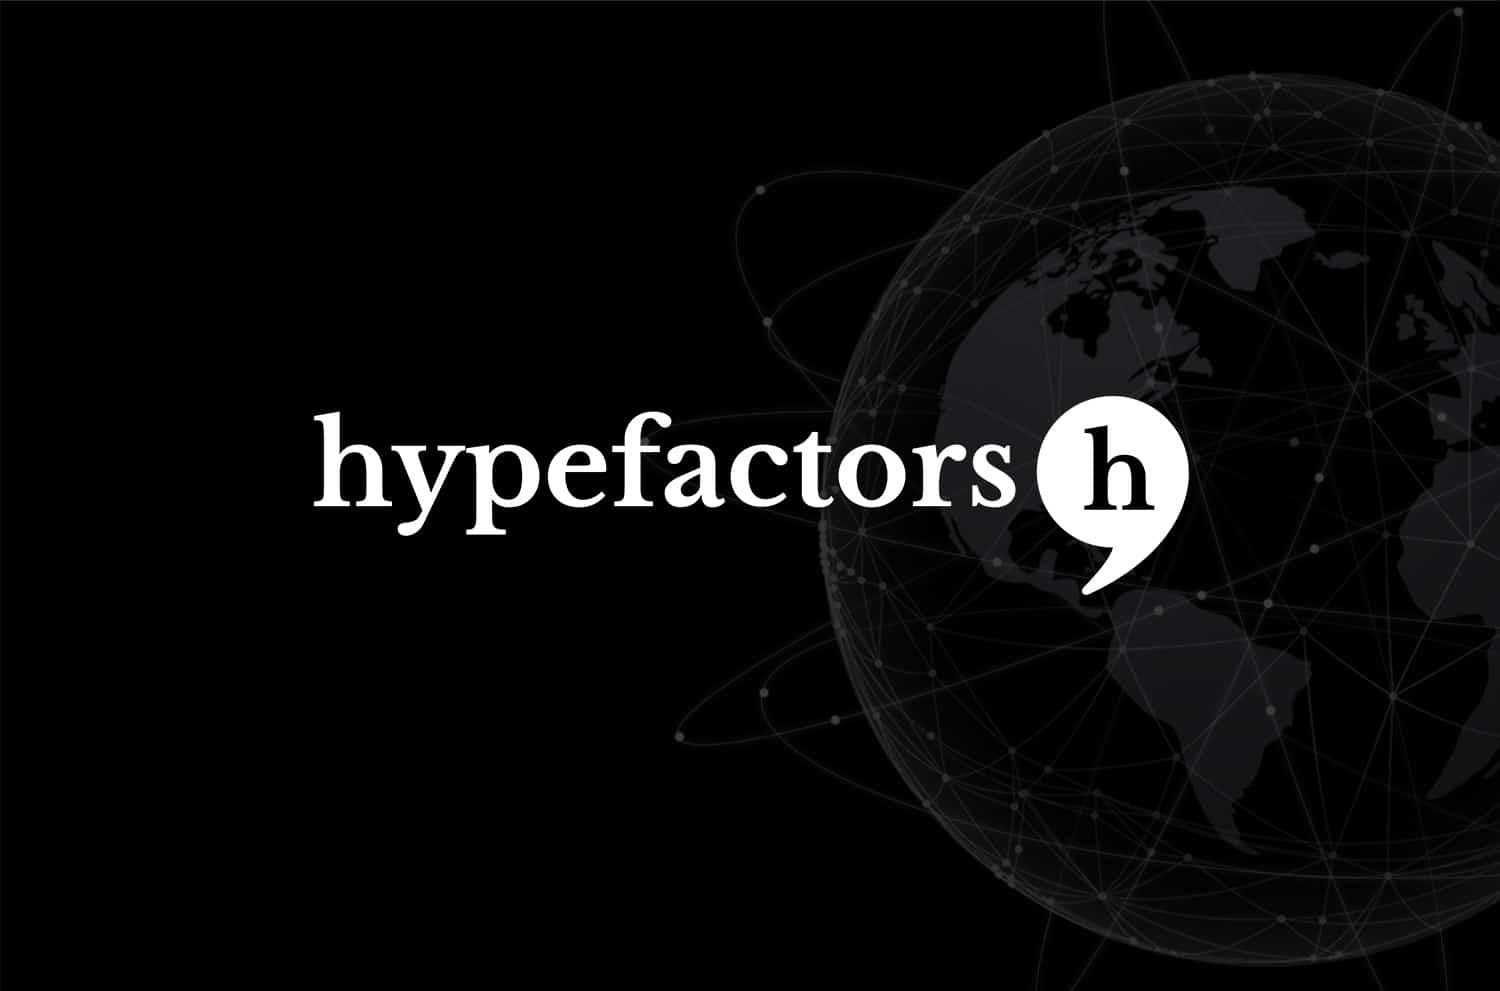 Hypefactors med ny teknologisk milepæl